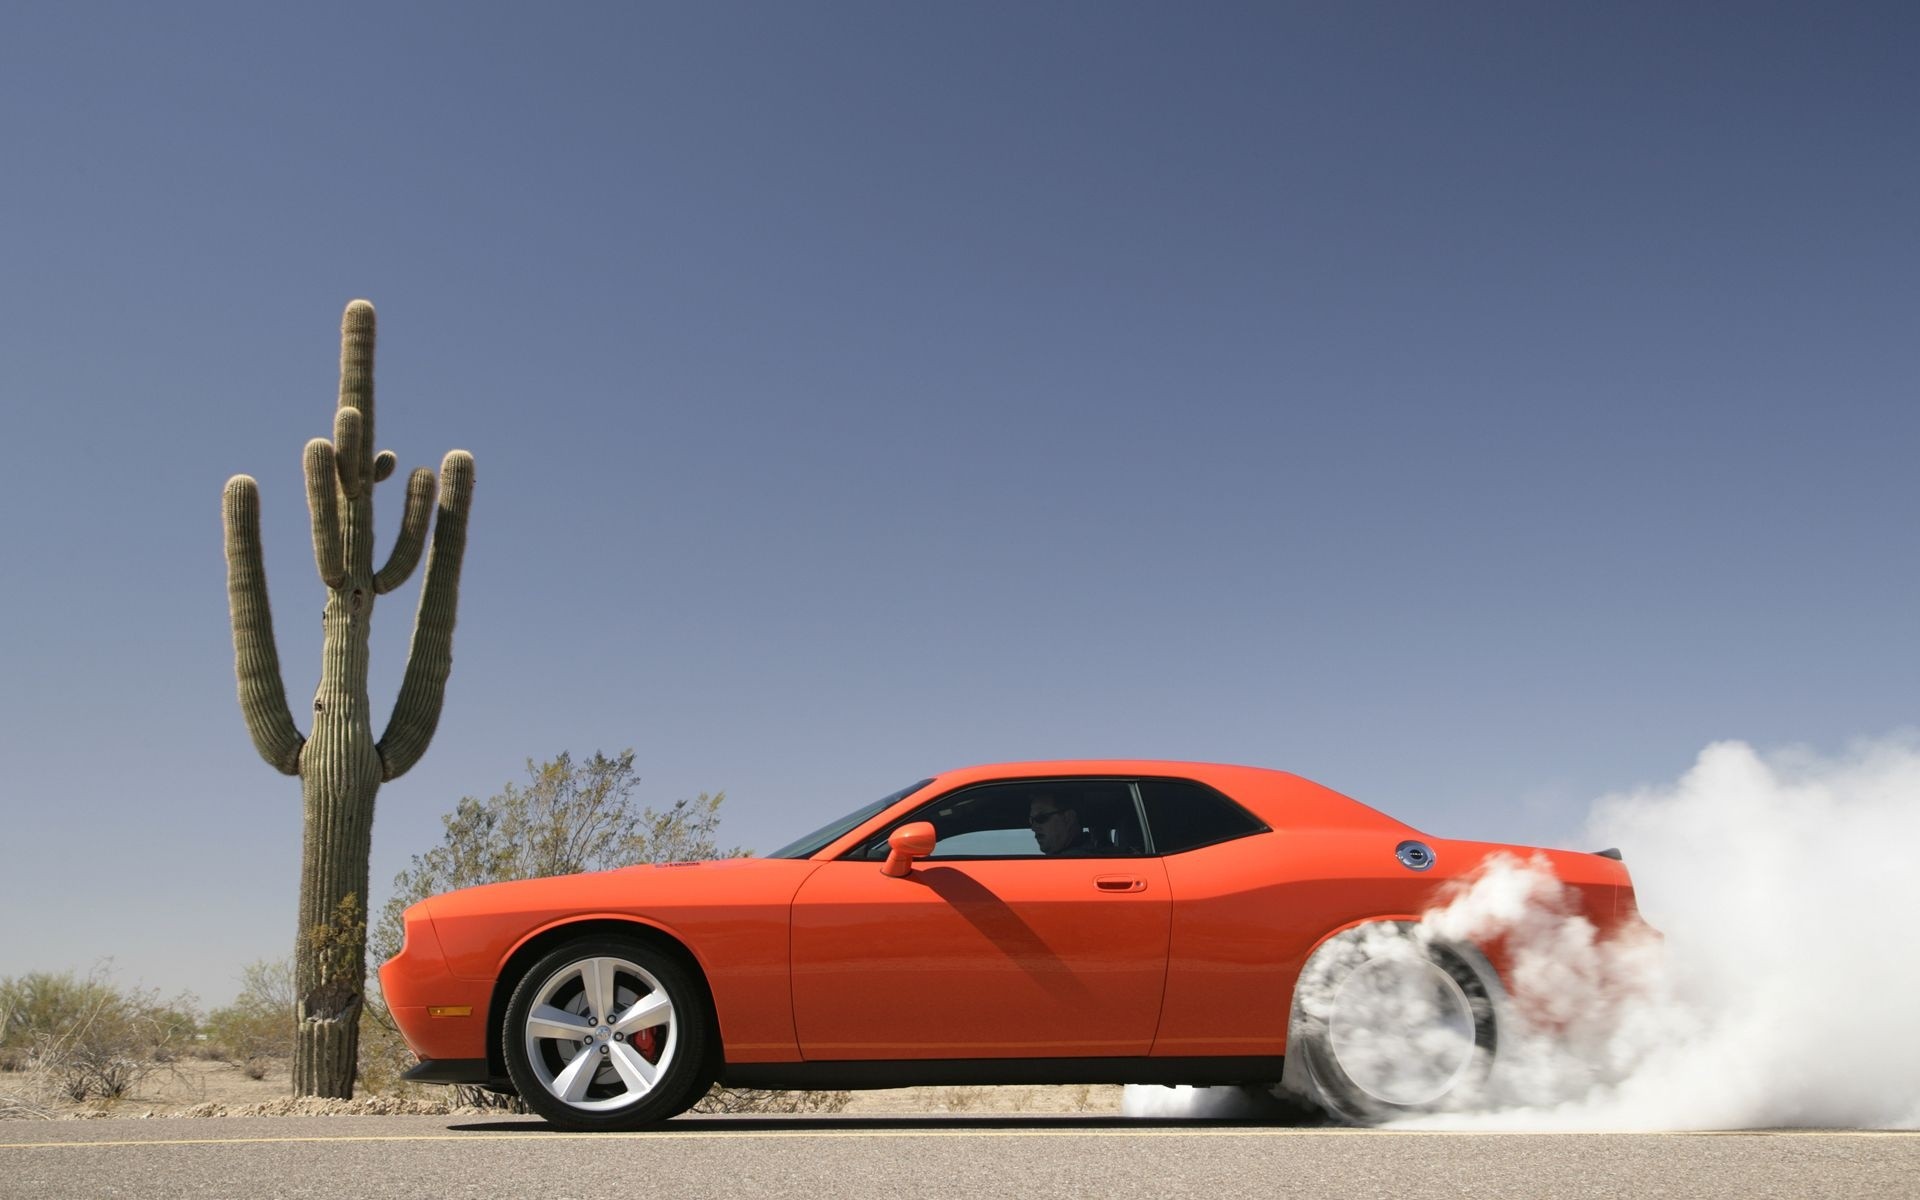 Burnout Car Dodge Dodge Challenger Dodge Challenger Srt8 Orange Car Smoke Vehicle 1920x1200